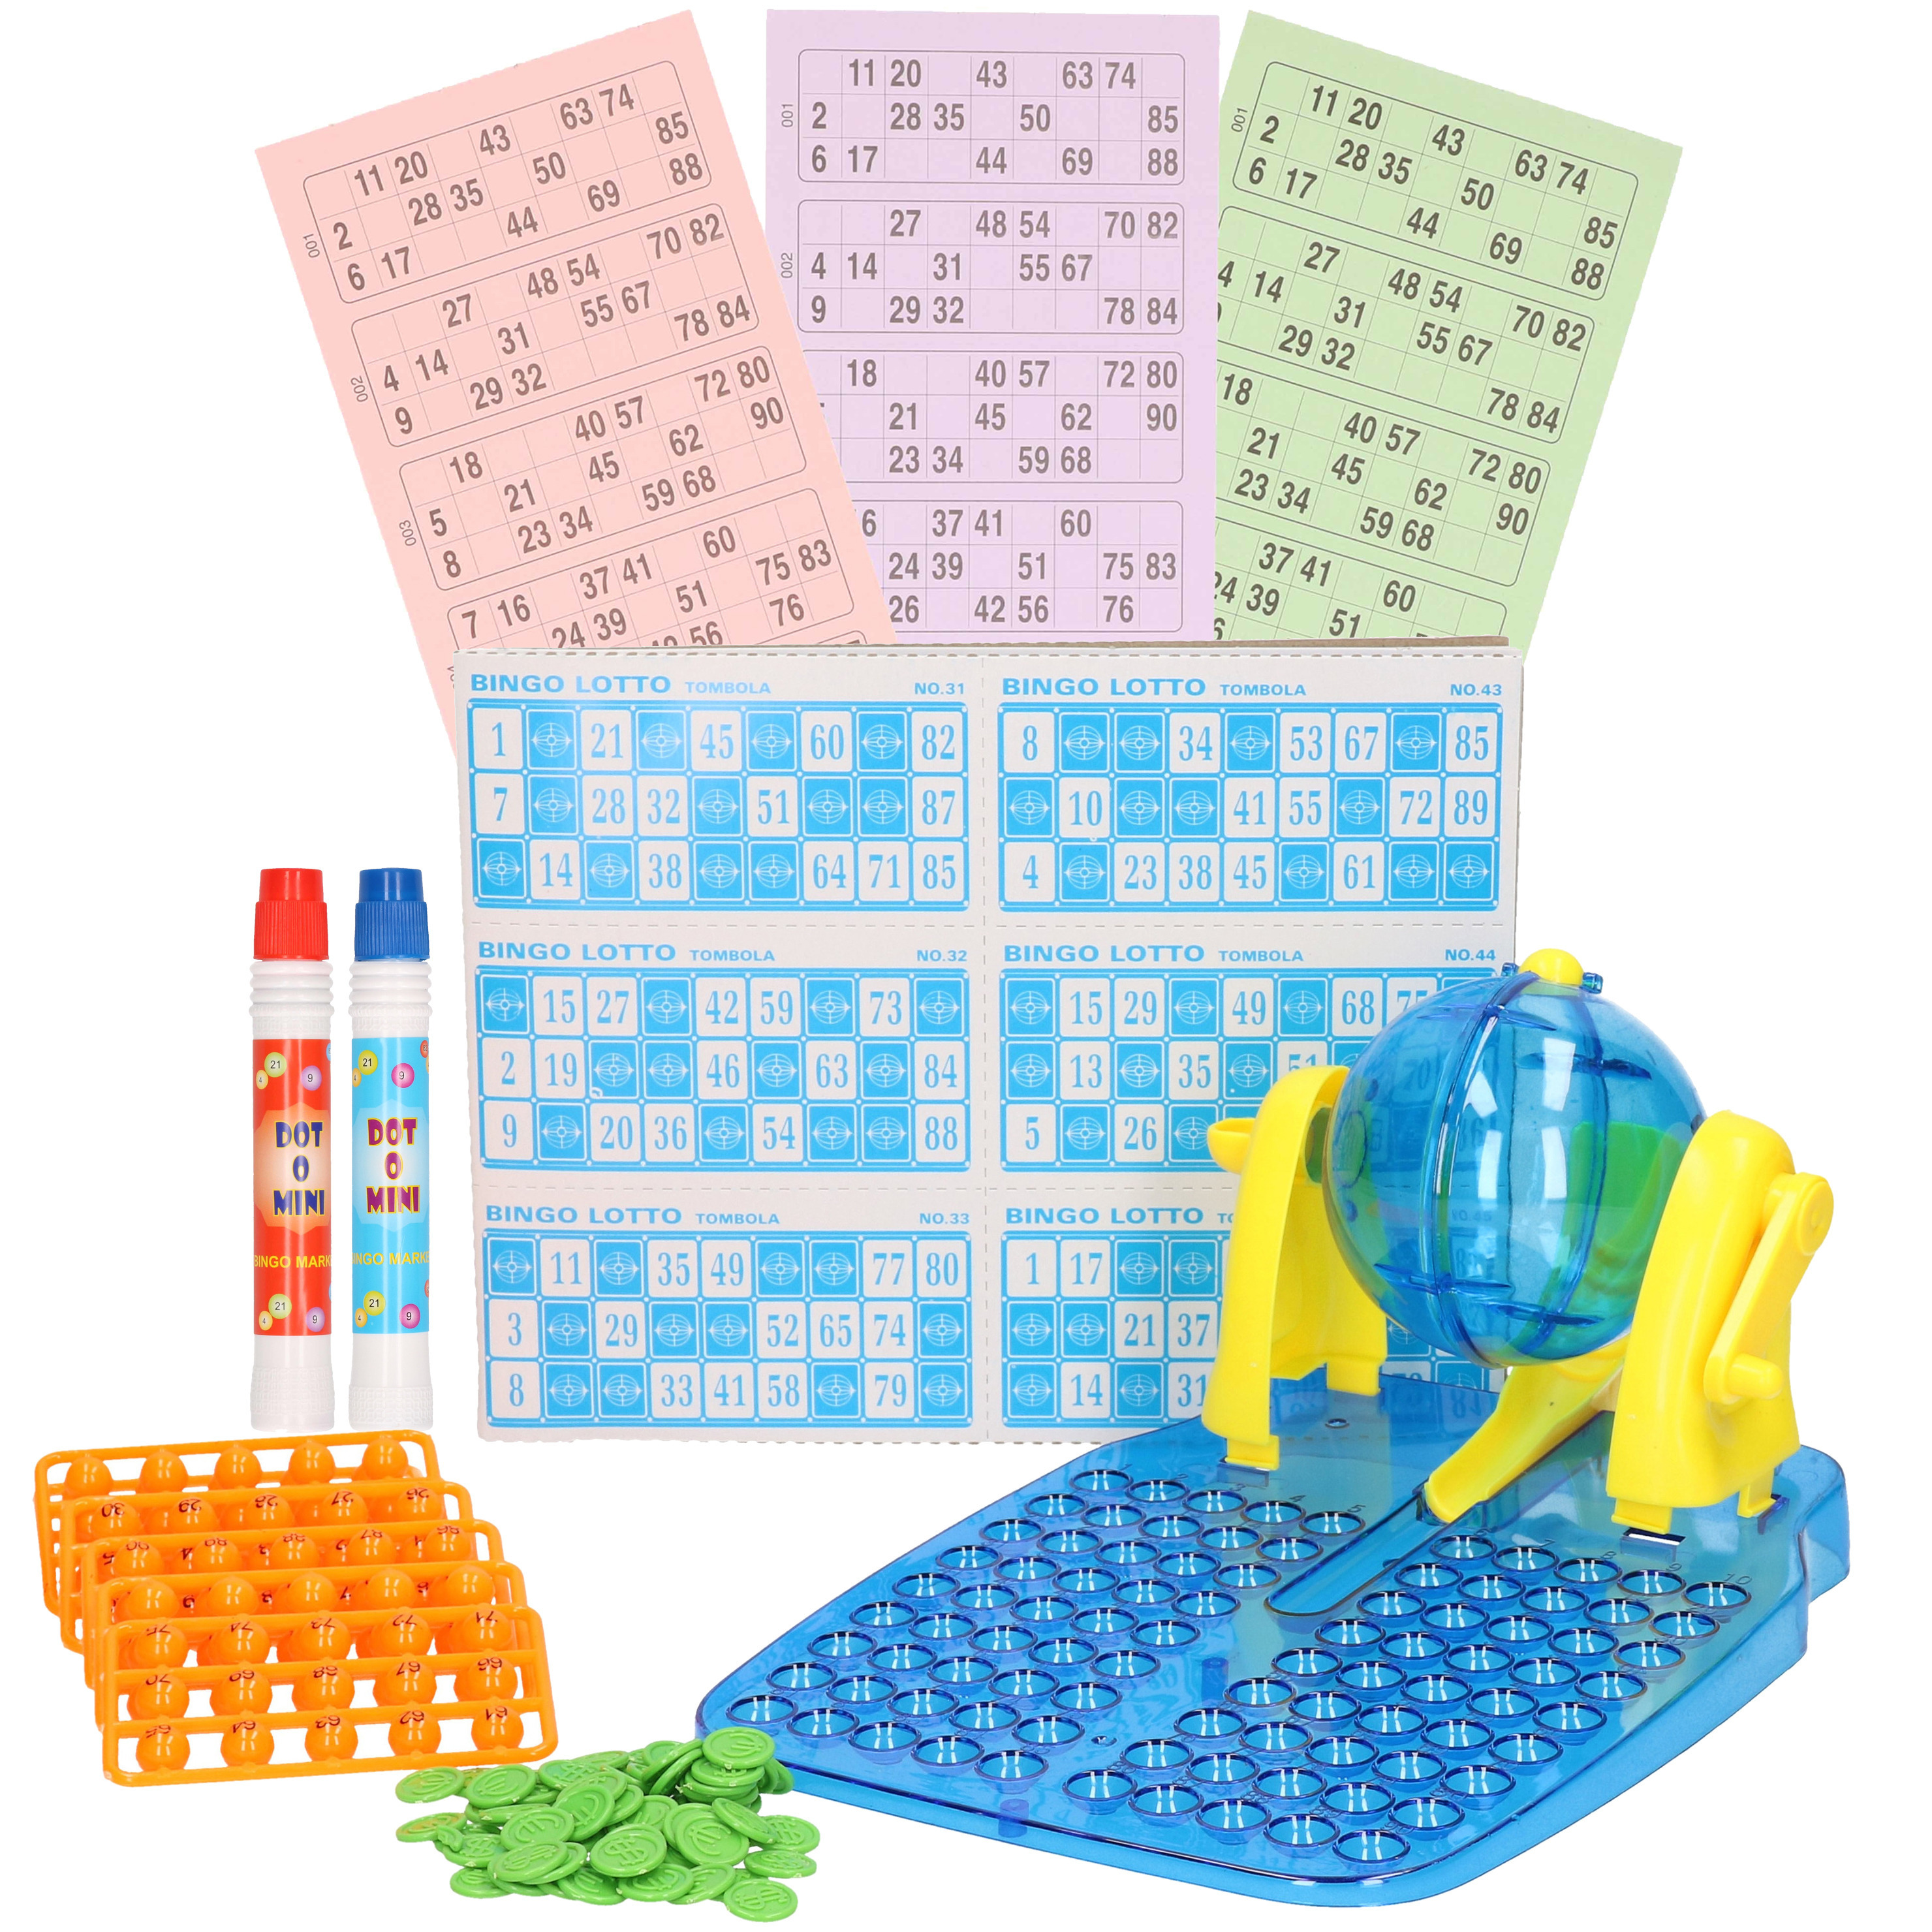 Bingo spel blauw-geel complete set nummers 1-90 met molen-148x bingokaarten-2x stiften